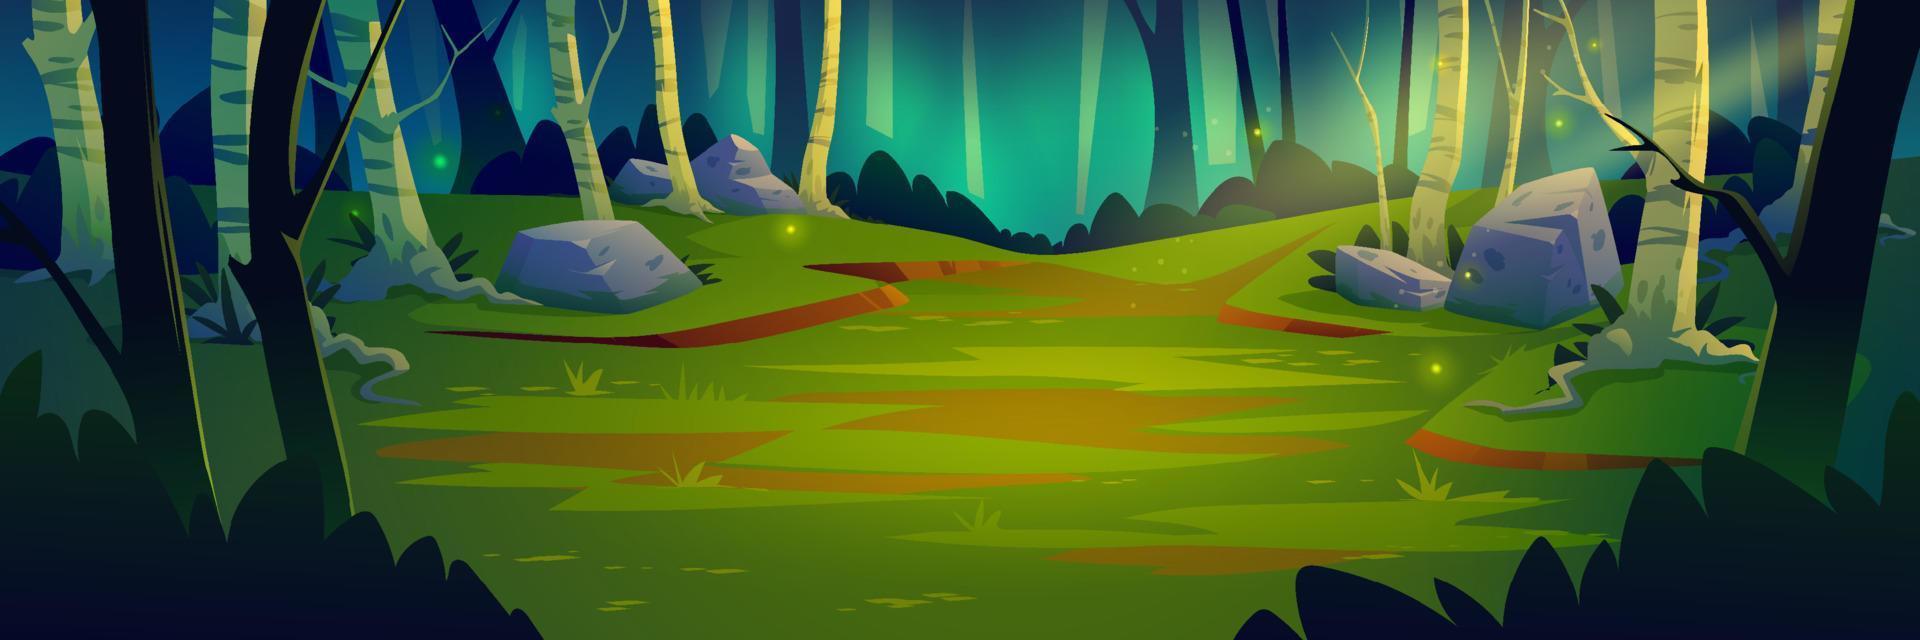 paysage de forêt profonde, illustration de vecteur de dessin animé